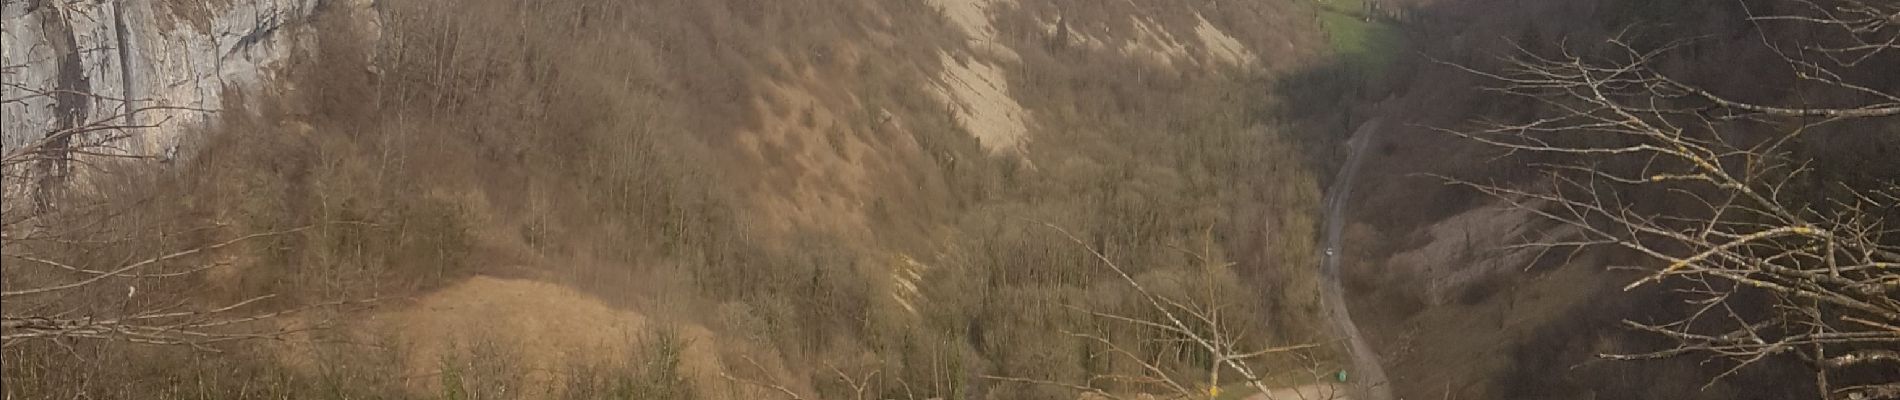 Randonnée Randonnée équestre Fay-en-Montagne - fay en montagne verges 9/02/20 - Photo